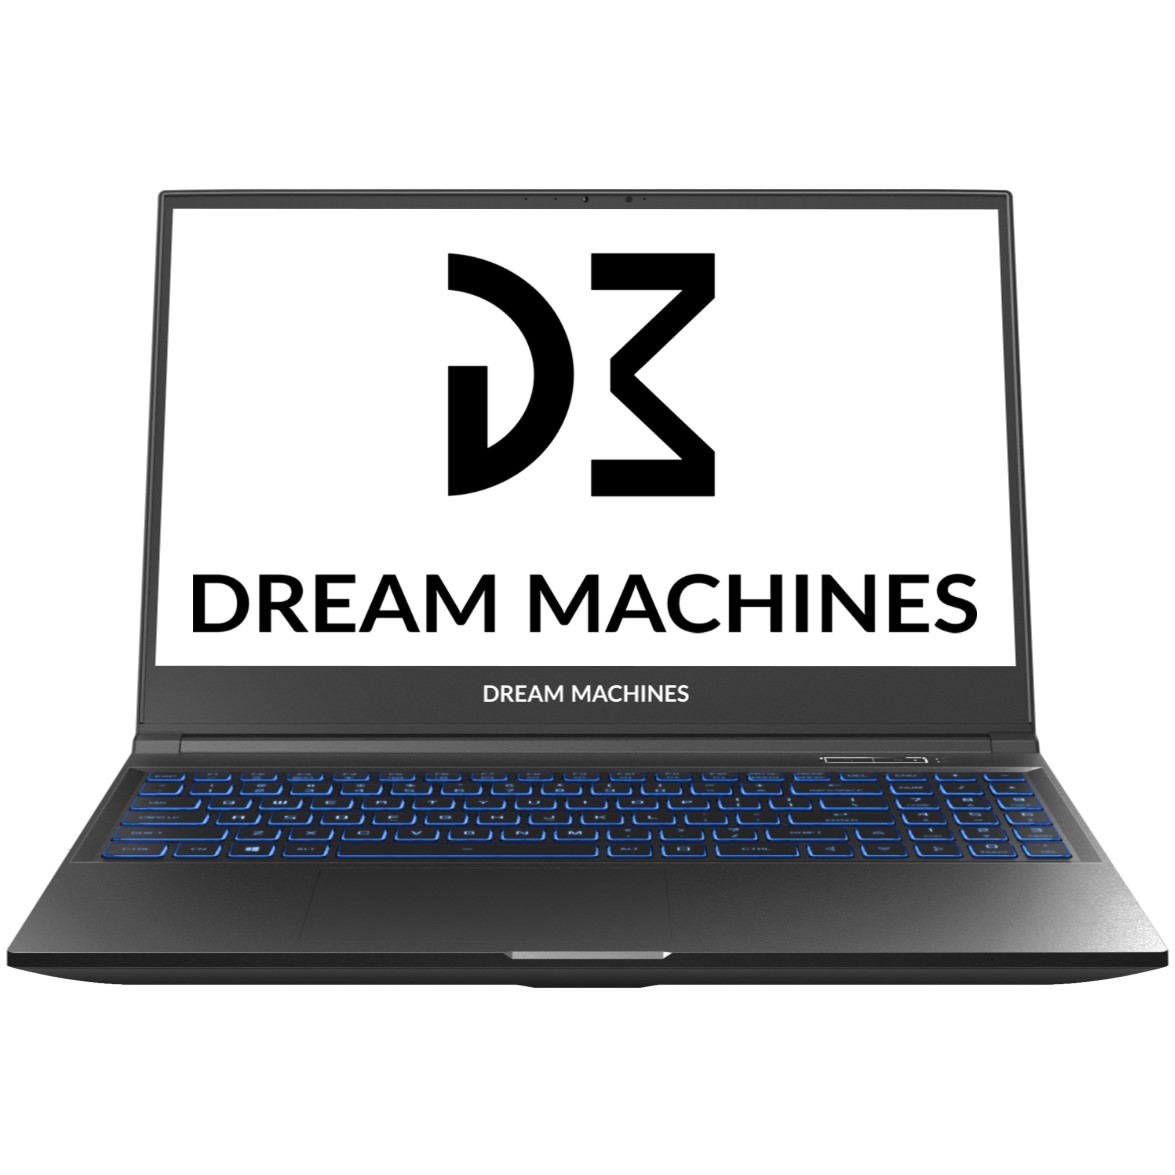 Dream Machines RT3060-15KZ31 AMD Ryzen 7 3700X 3600MHz/15.6"/1920x1080/16GB/1024GB SSD/DVD нет/NVIDIA GeForce RTX 3060 6GB/Wi-Fi/Bluetooth/Без ОС (Black)